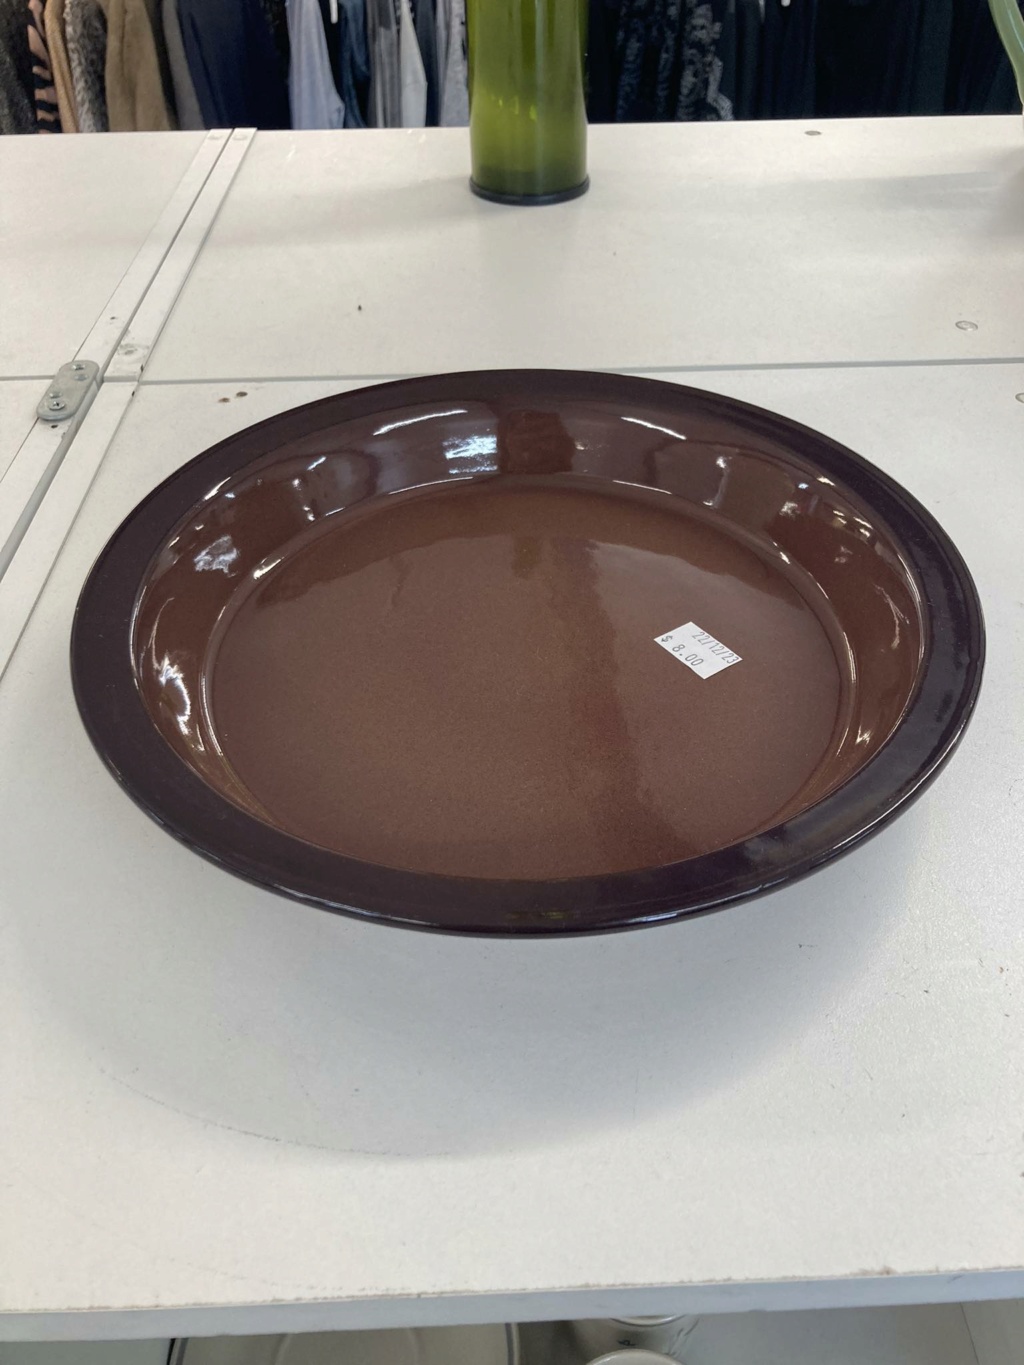 Teal Ceramics Pie Dish Teal_d10